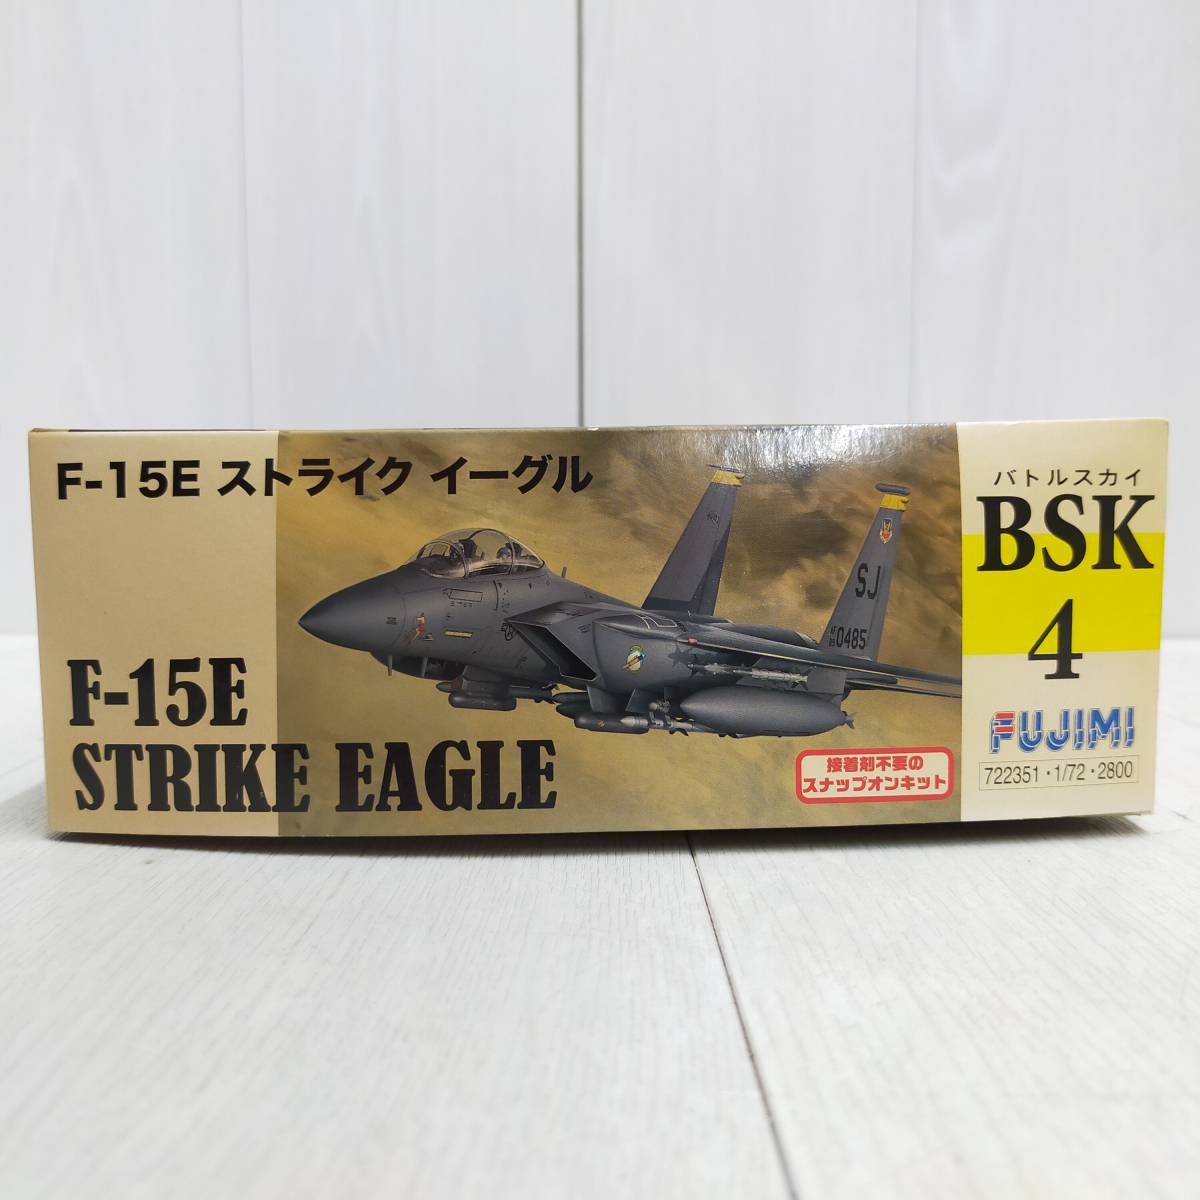 【 送料無料 】 未組立 ◆ FUJIMI F-15E ストライク イーグル 1/72 スケール 722351 フジミ BSK4 スナップオンキット 戦闘機 プラモ 模型_画像7